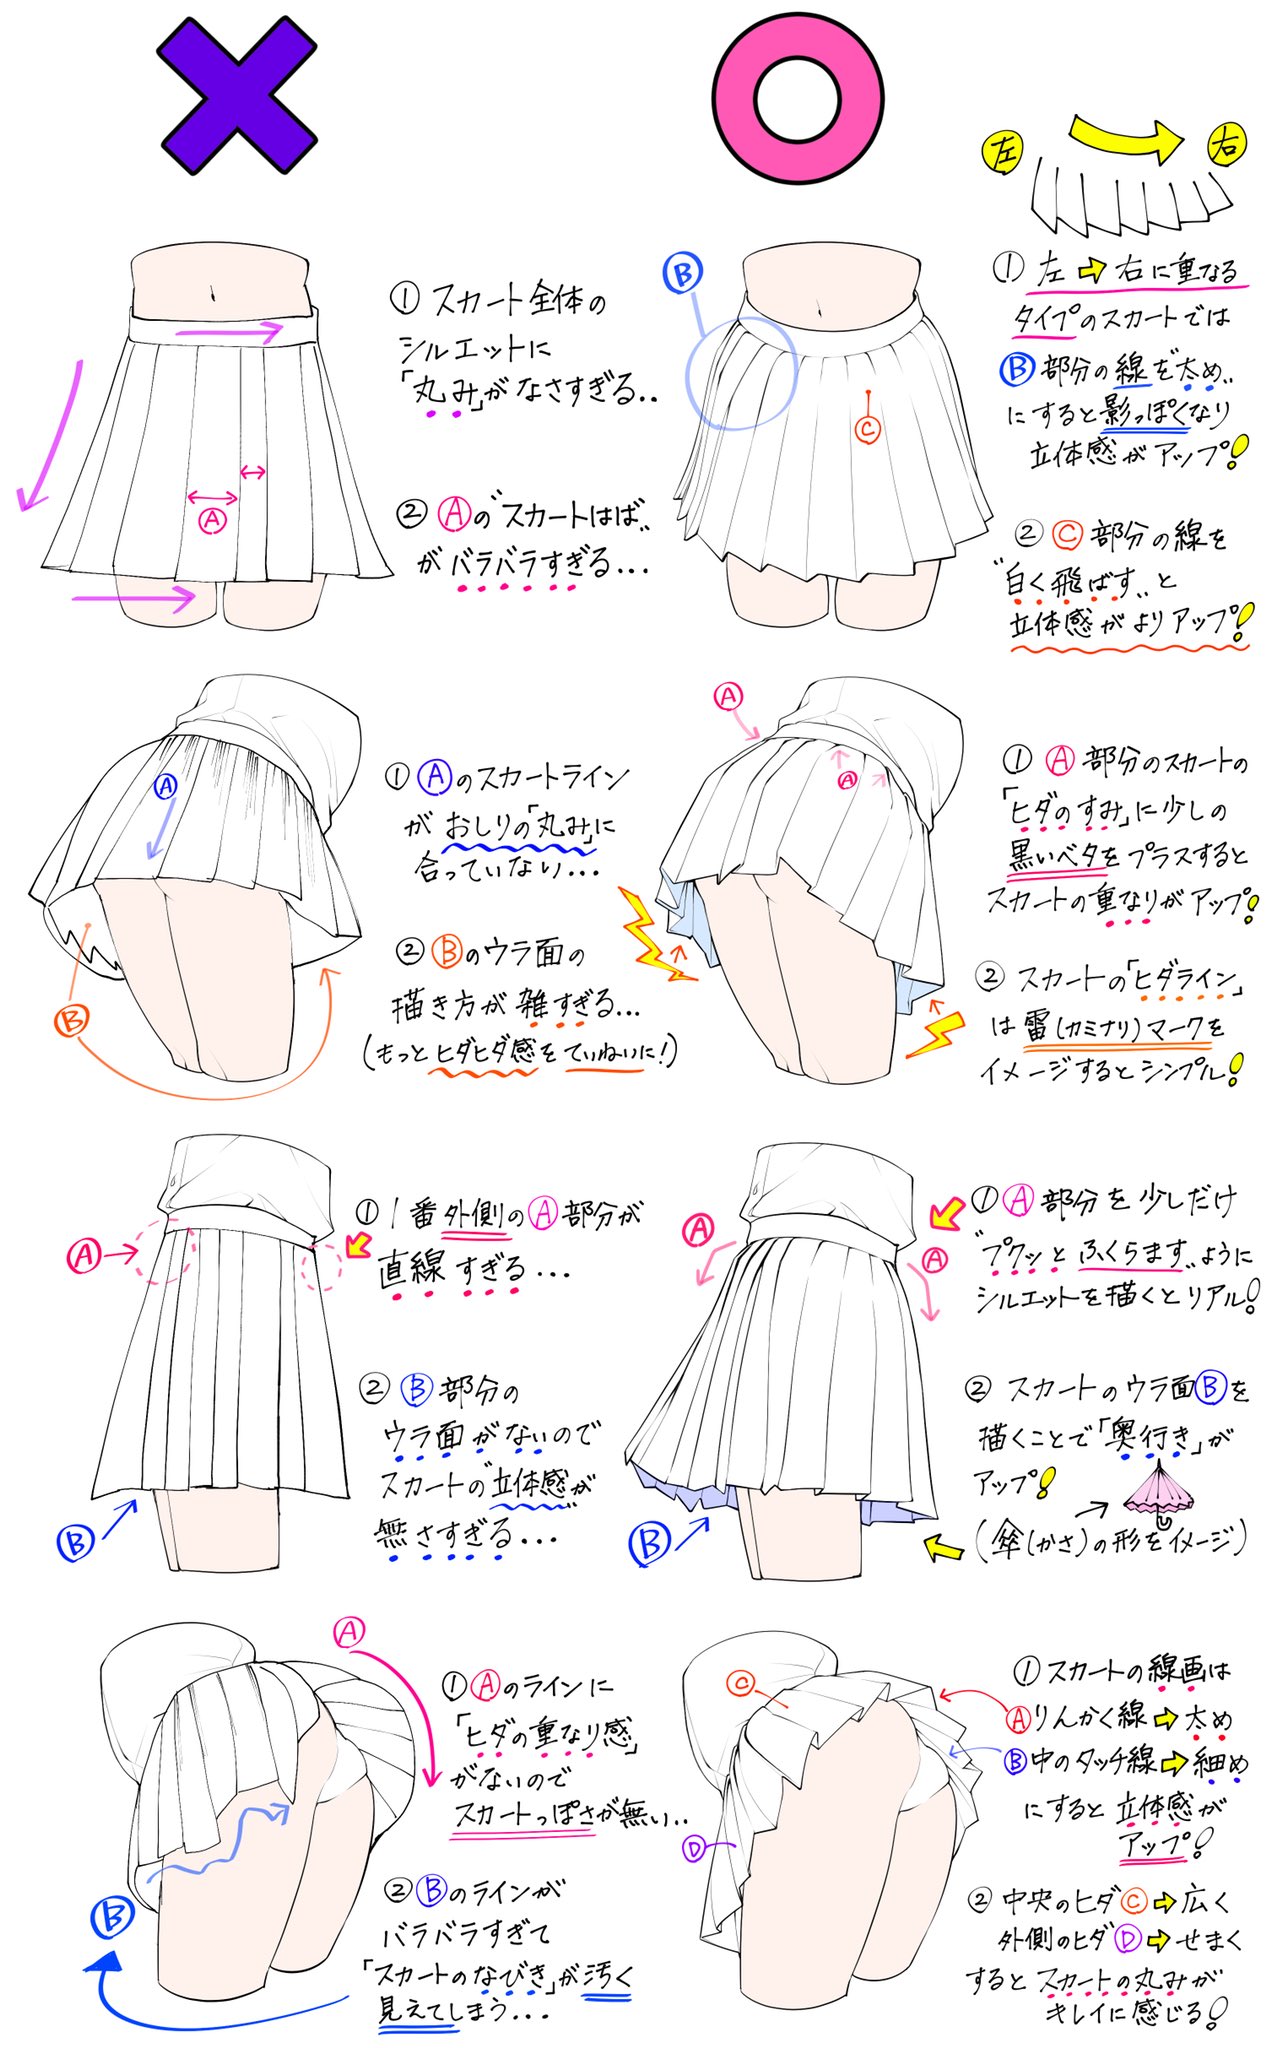 吉村拓也 イラスト講座 スカートの描き方 が 上達するための ダメなこと と 良いこと